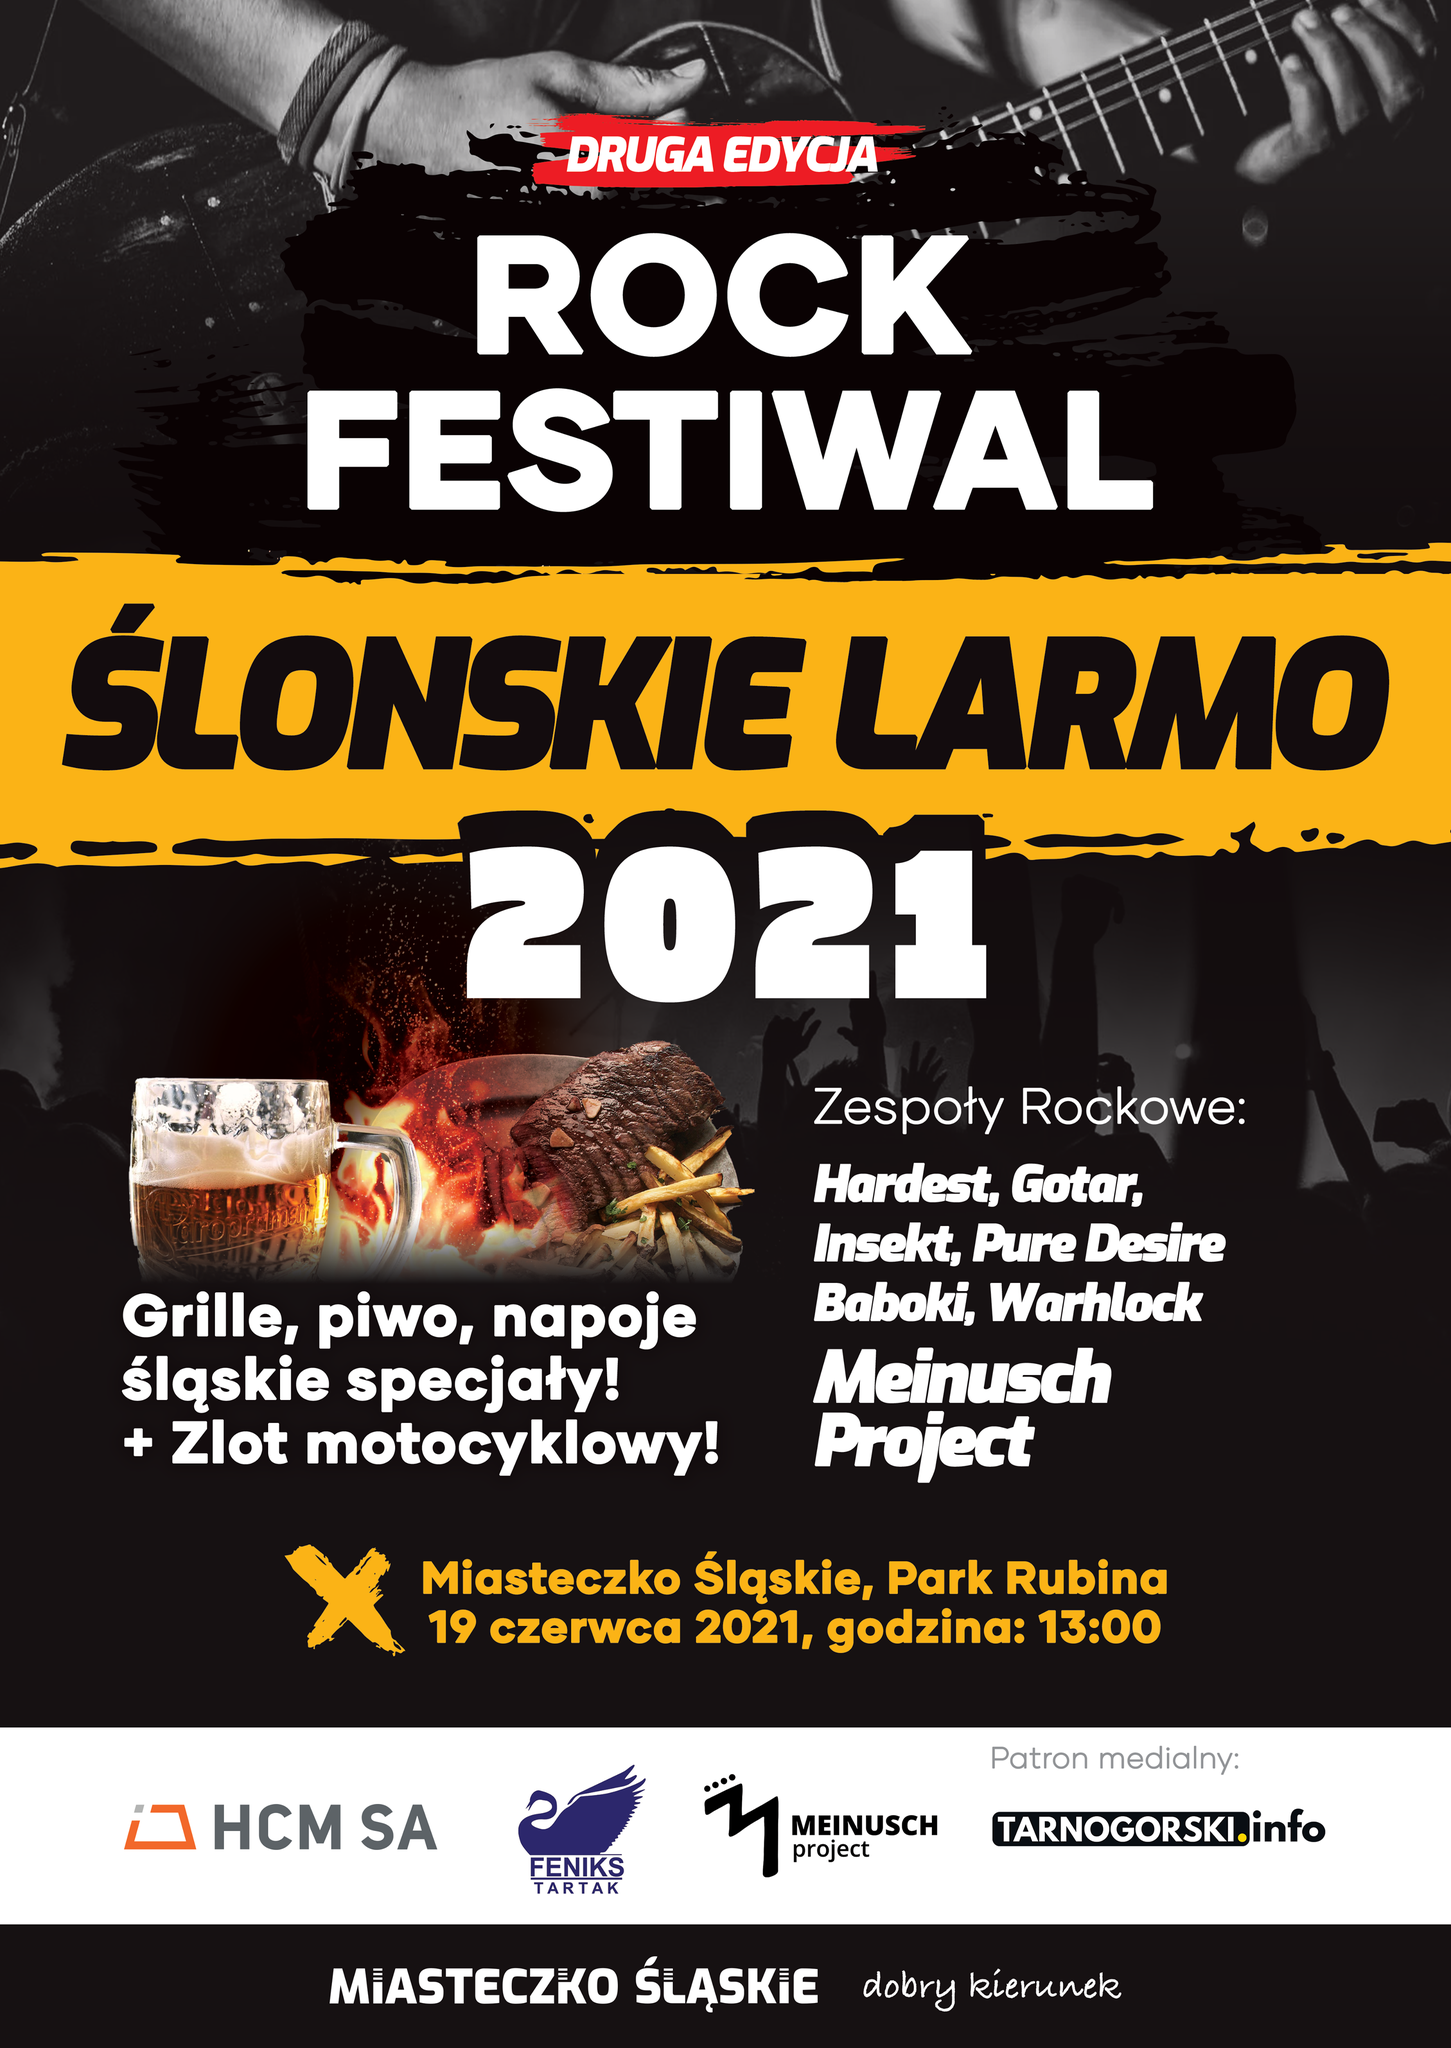 Druga edycja Festiwalu Śląskie Larmo w Miasteczku Śląskim